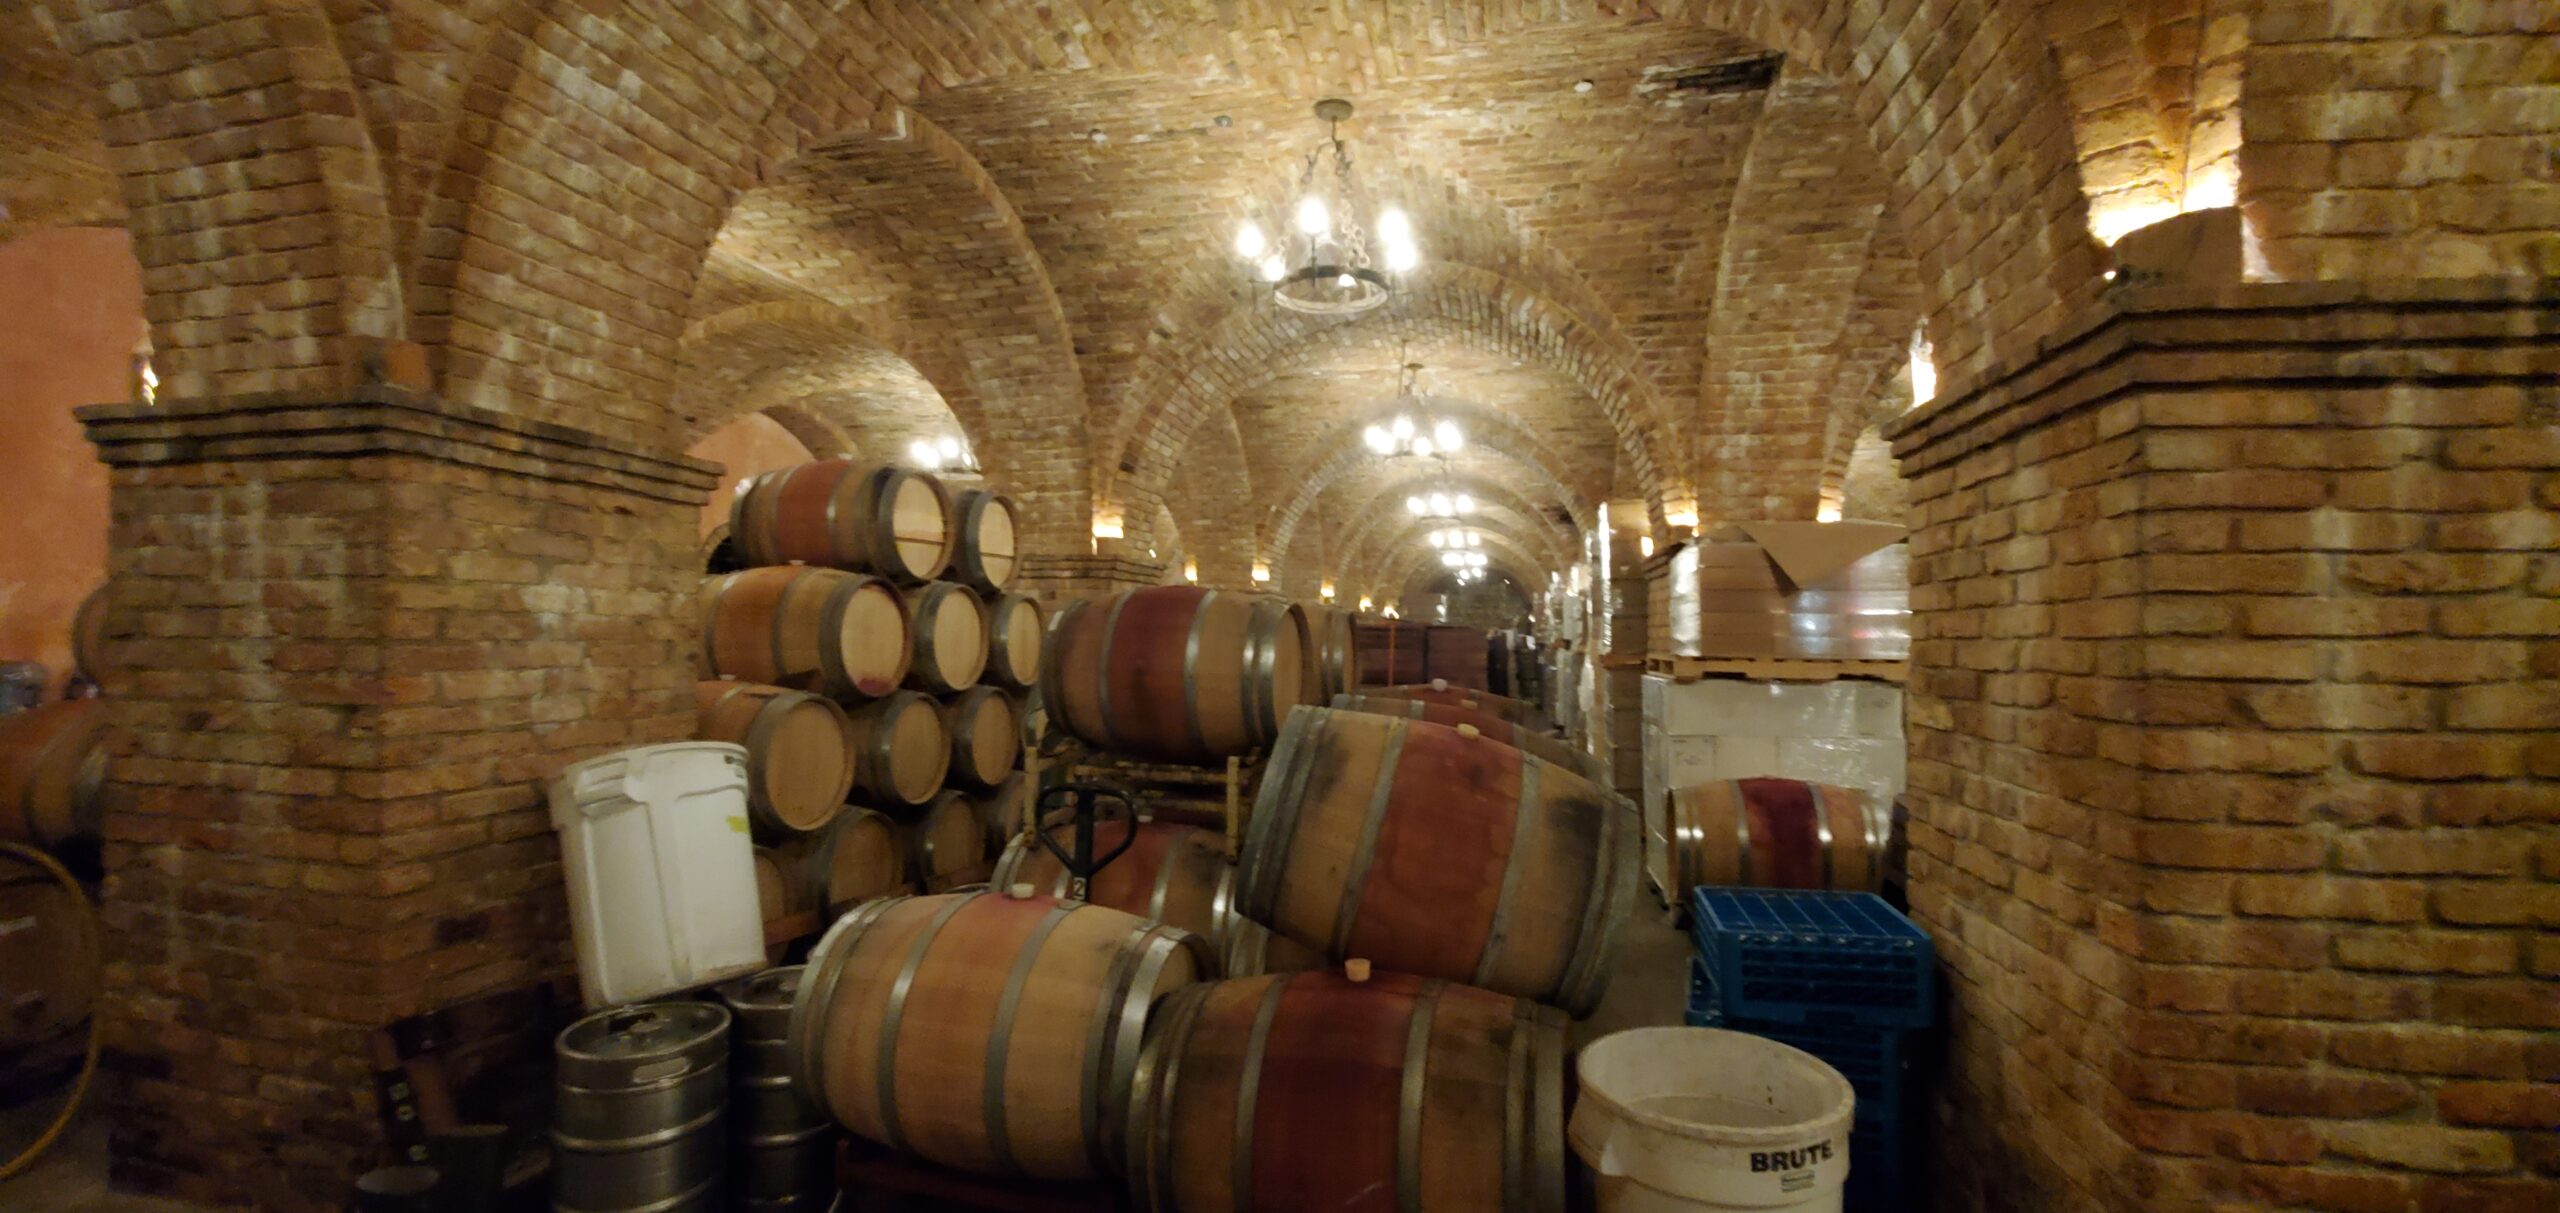 Wine barrel storage in the Castello di Amorosa basement.